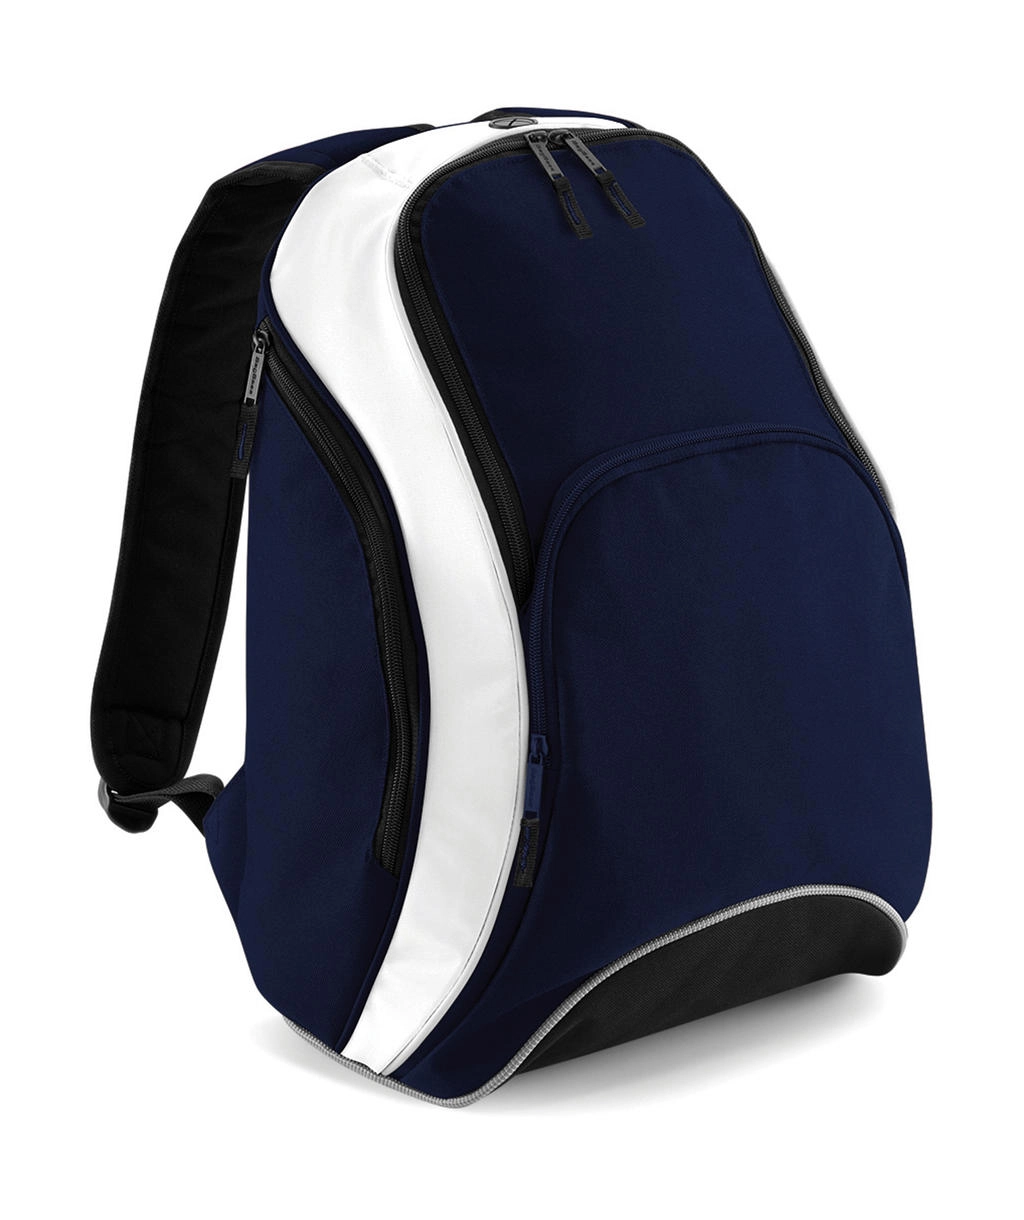 Teamwear Backpack zum Besticken und Bedrucken in der Farbe French Navy/White mit Ihren Logo, Schriftzug oder Motiv.